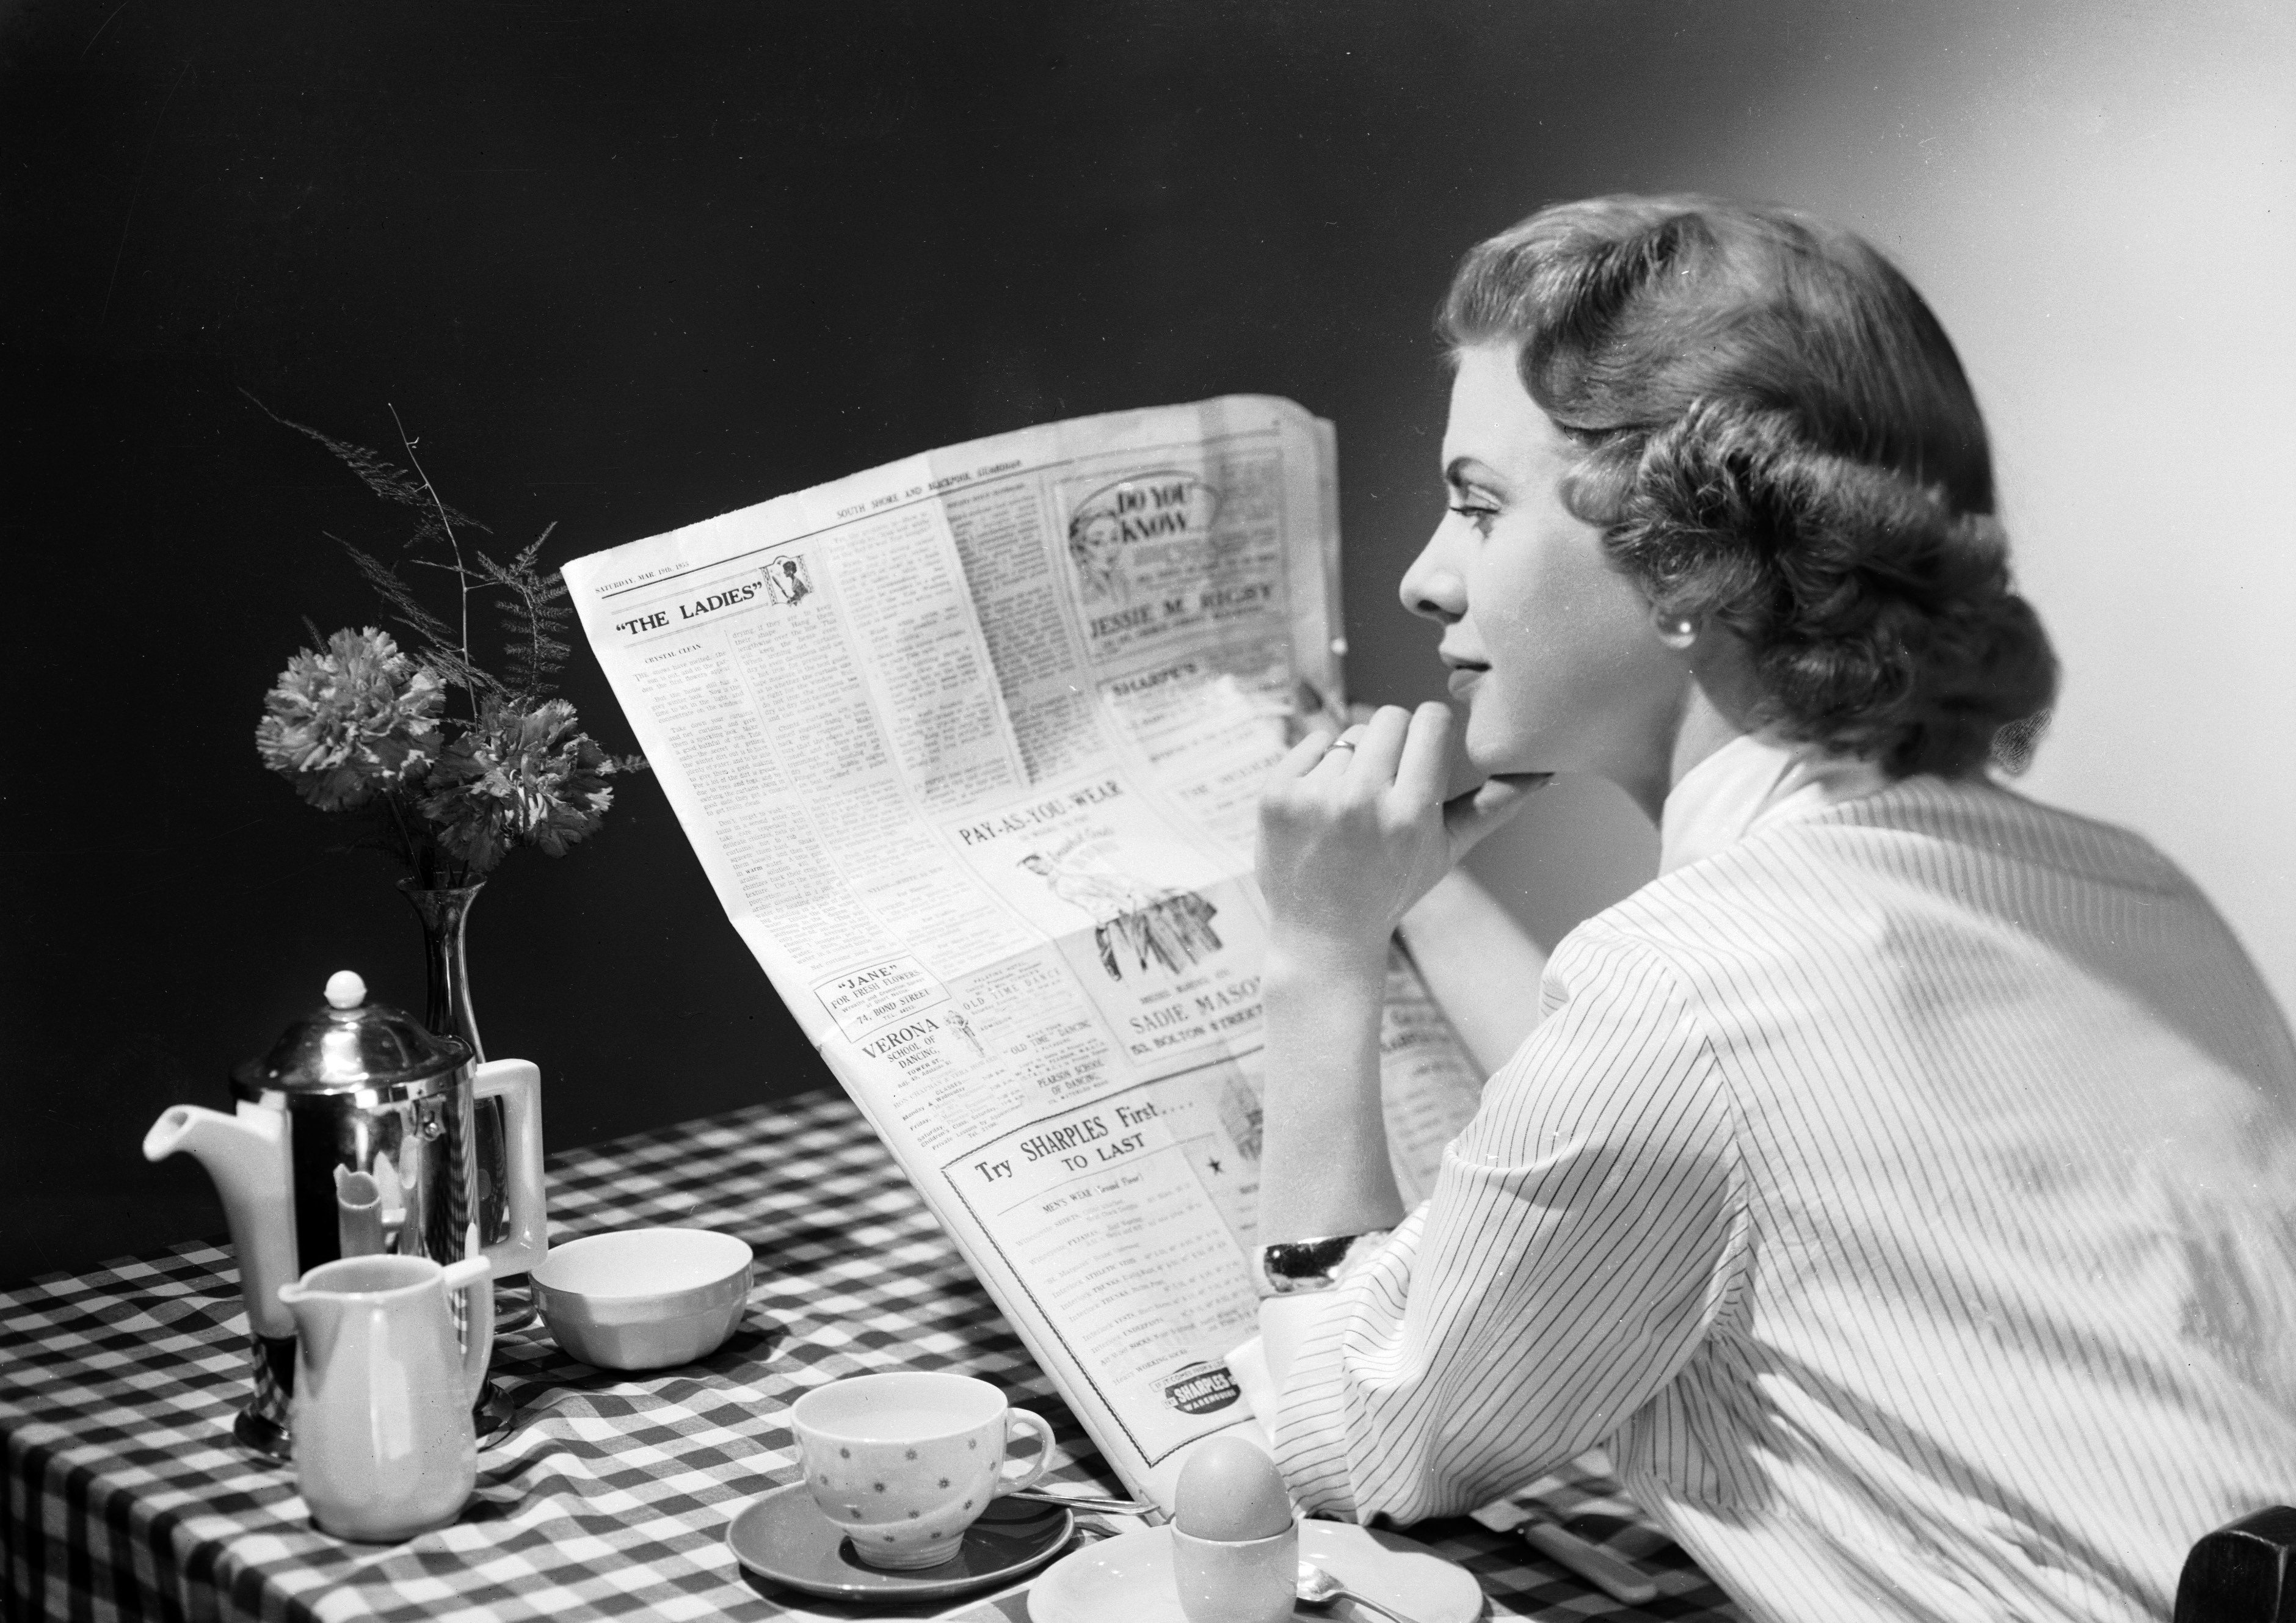 woman eating breakfast